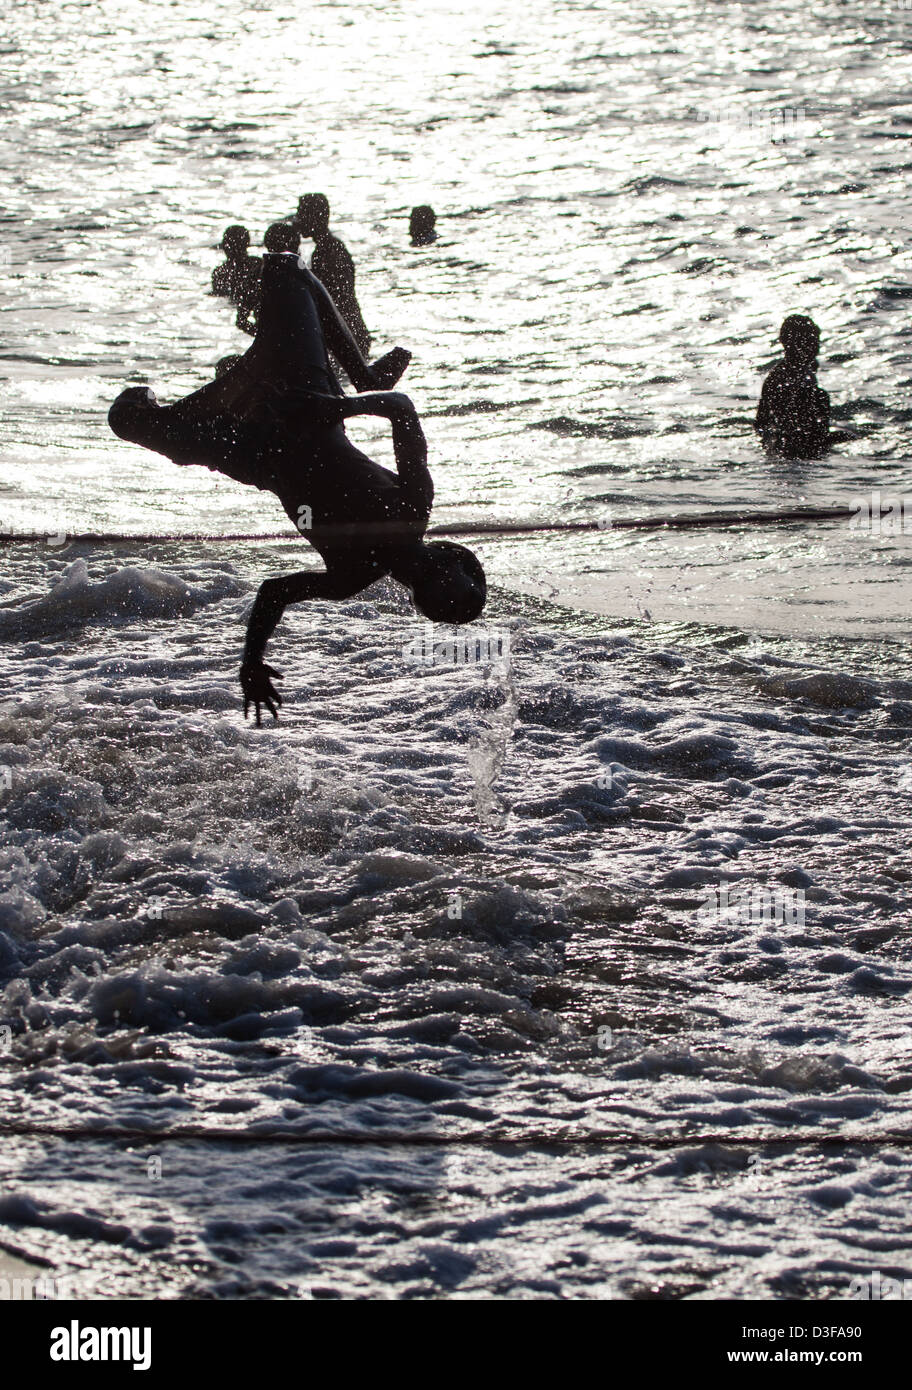 Un adolescente se voltea en el surf mientras el sol se pone detrás de él. Zanzíbar, Tanzania Foto de stock